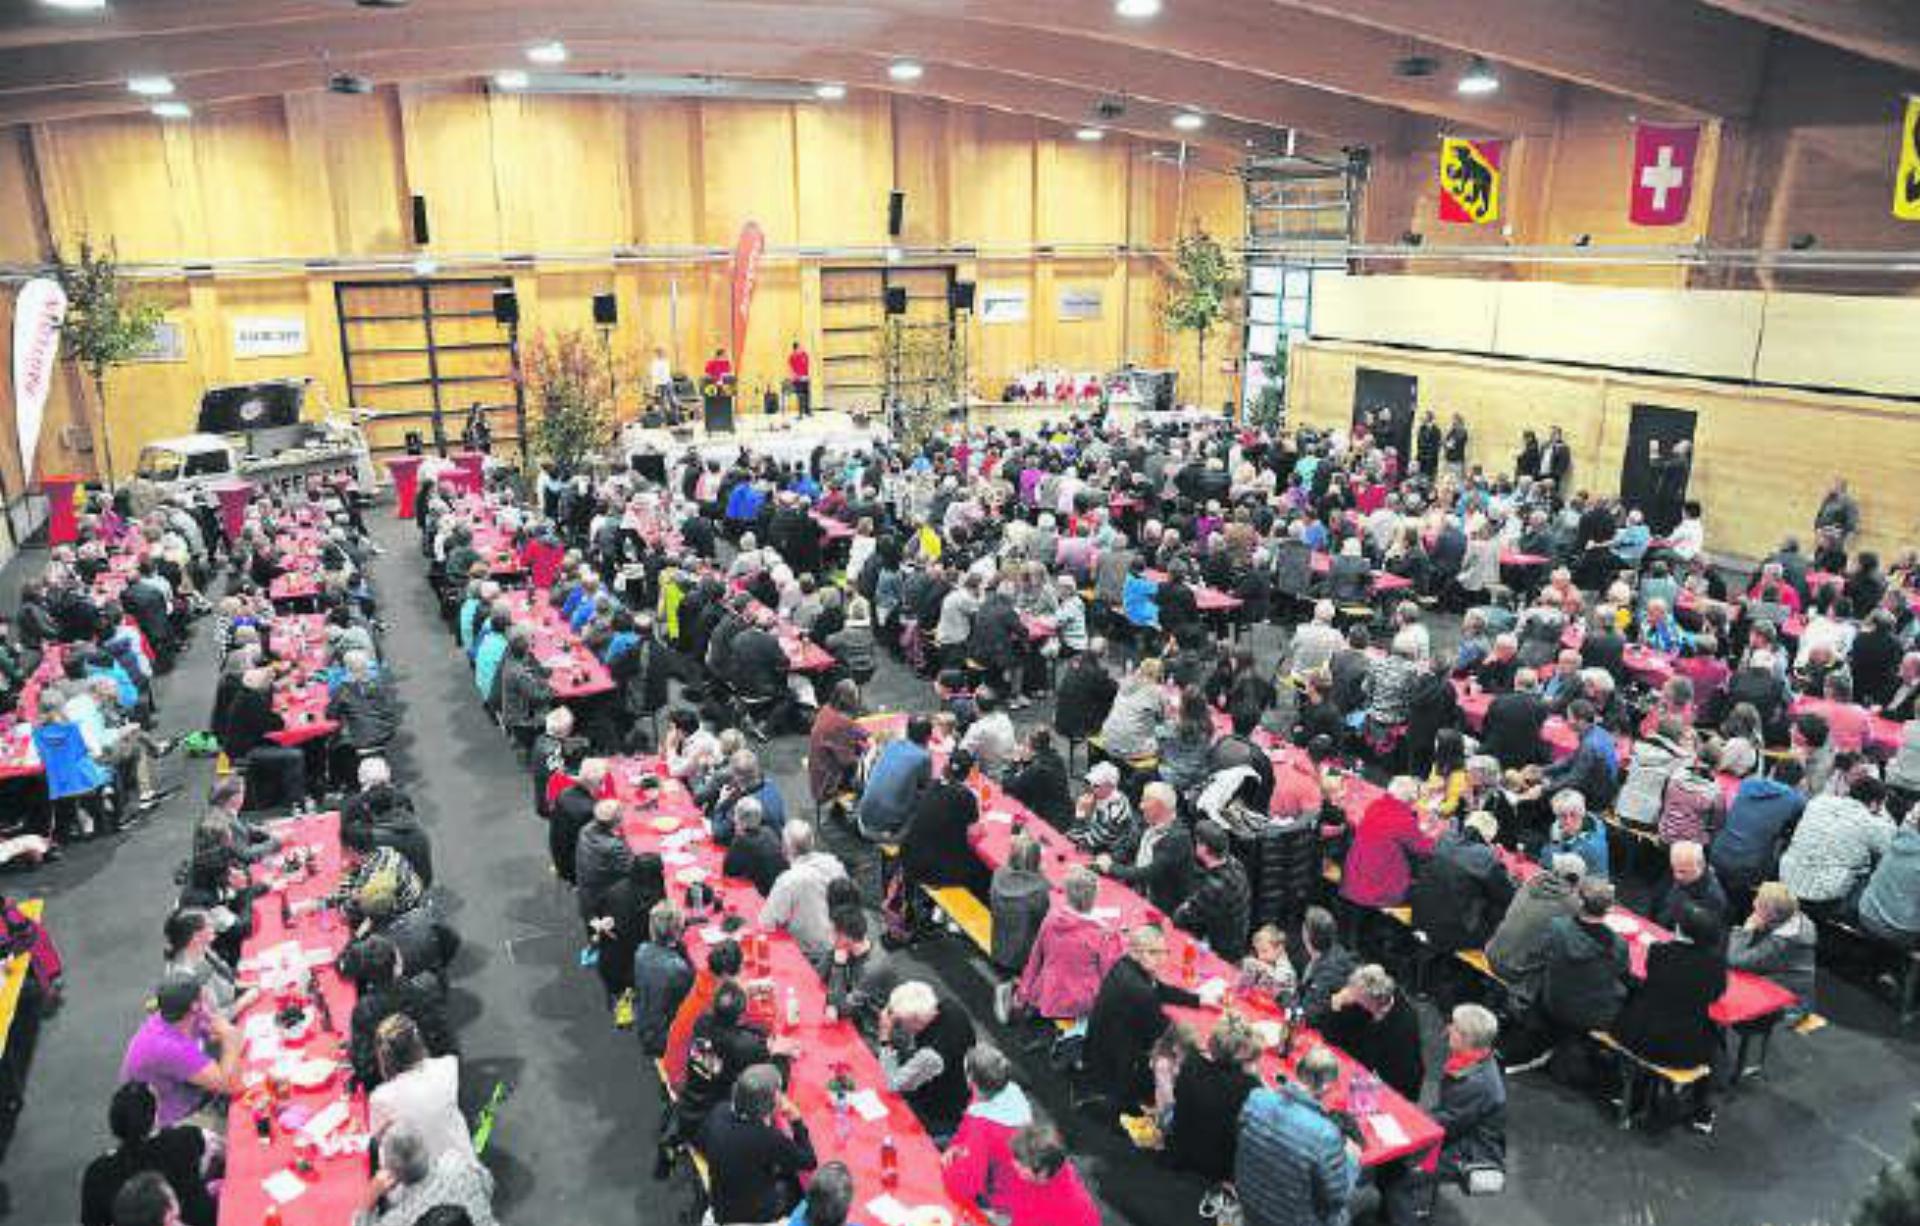 Schöner Anblick: Der Mitgliederanlass der Raiffeisenbank Obersimmental-Saanenland sorgte für eine voll besetzte Simmental Arena in Zweisimmen.